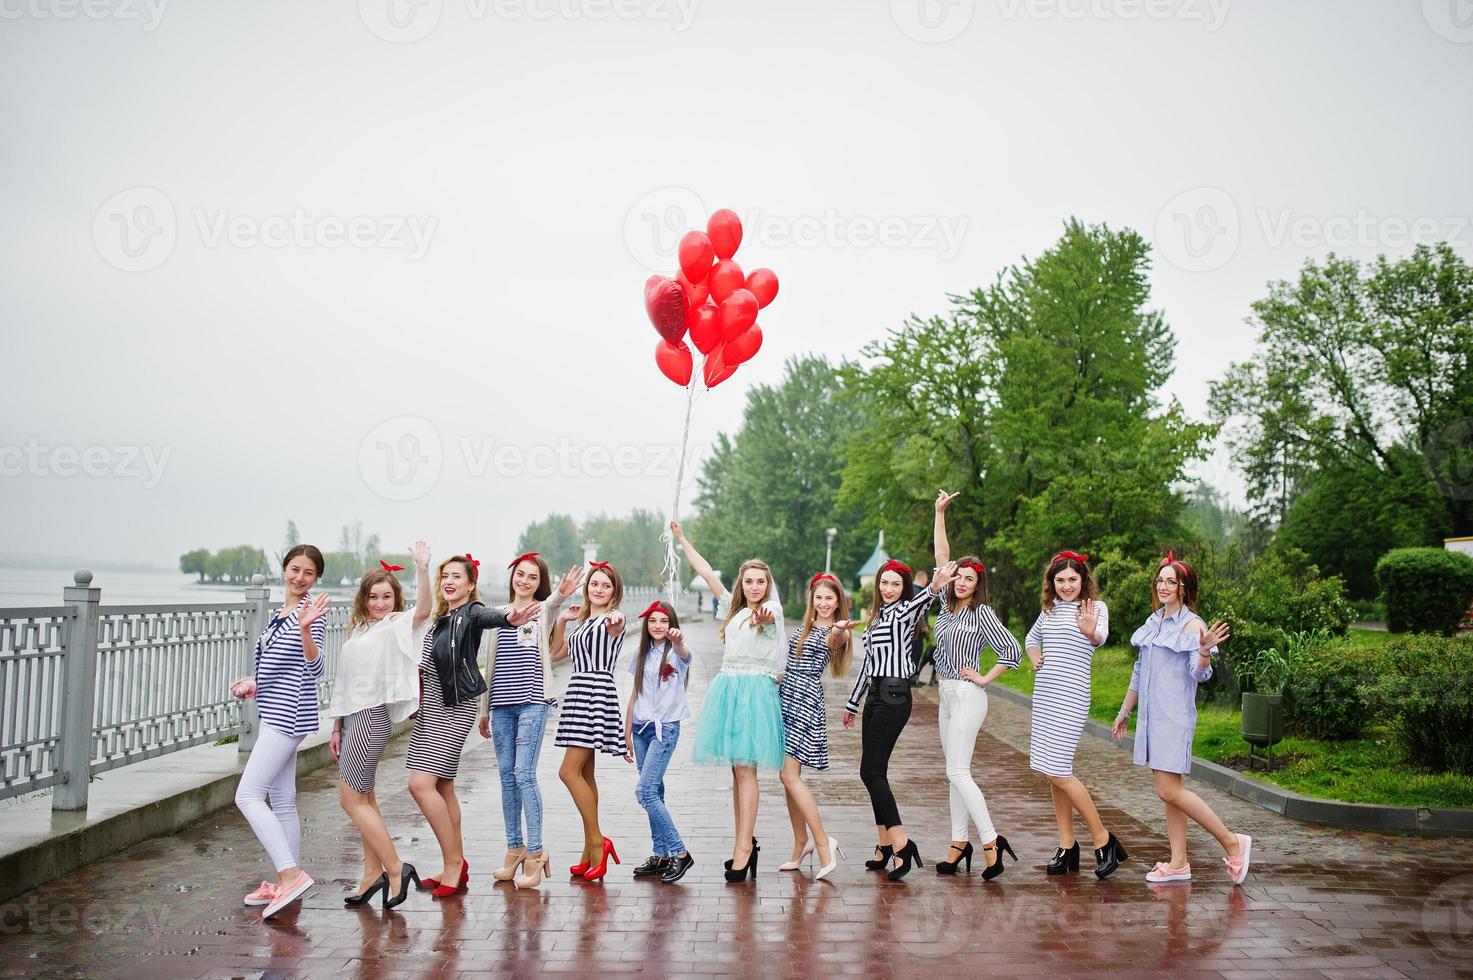 onze damas de honra incrivelmente bonitas com noiva deslumbrante posando com balões vermelhos em forma de coração na calçada contra o lago ao fundo. foto